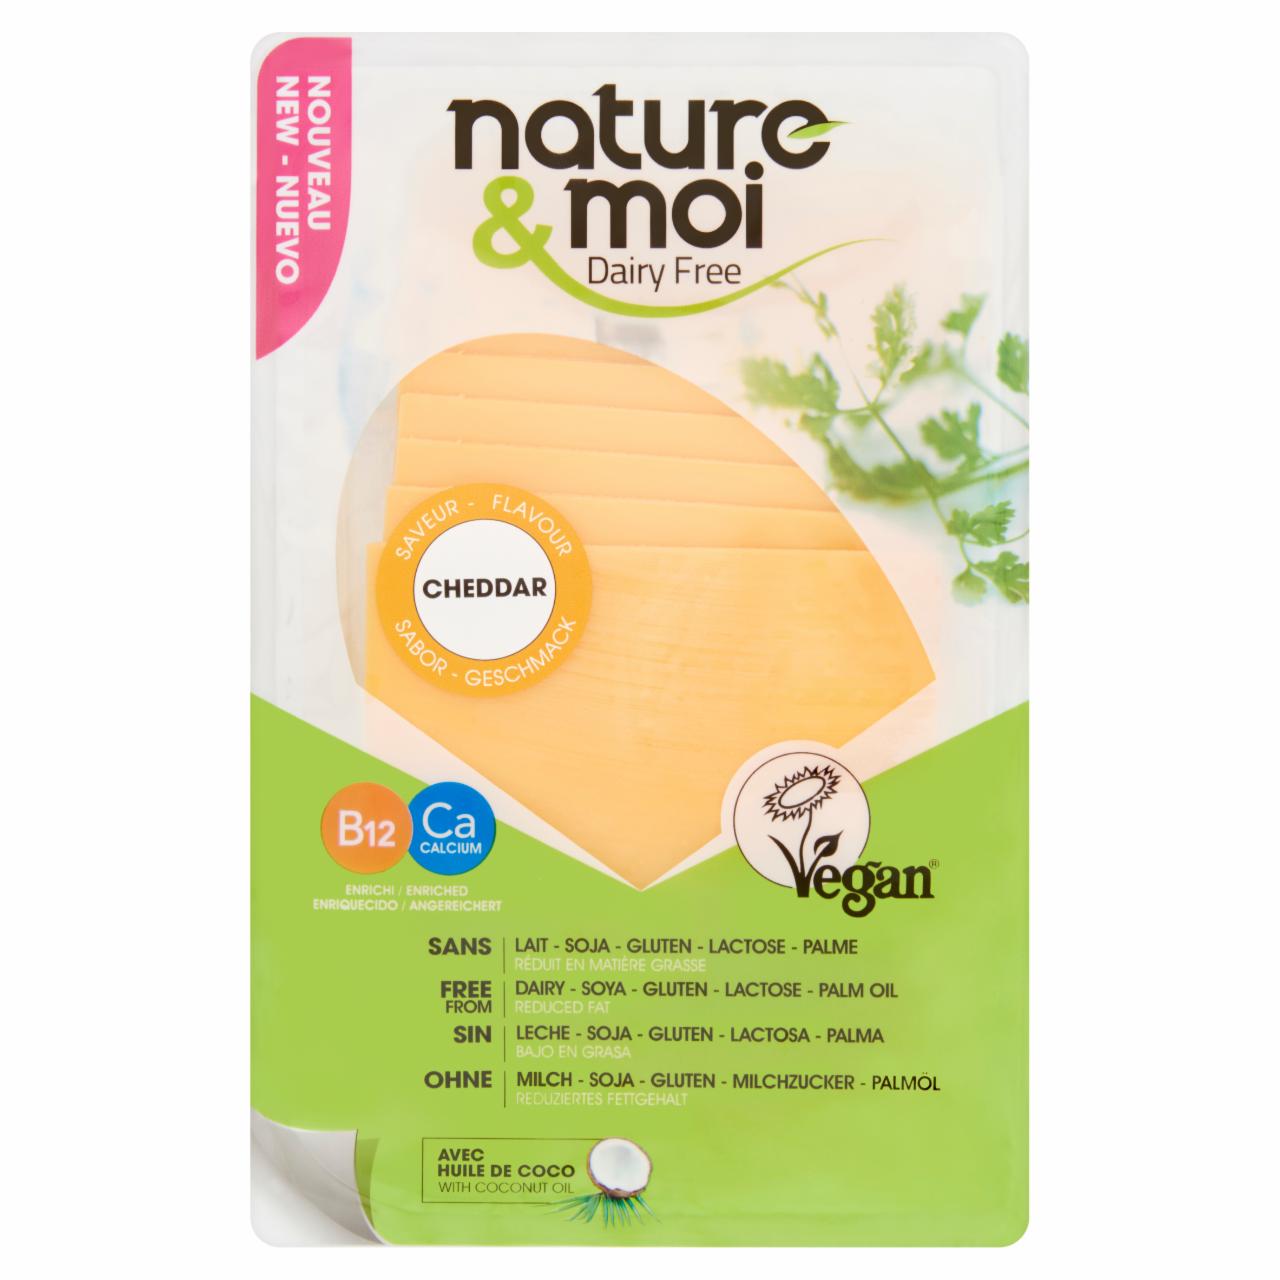 Képek - Nature & Moi szeletelt vegetáriánus specialitás cheddar ízesítéssel 200 g